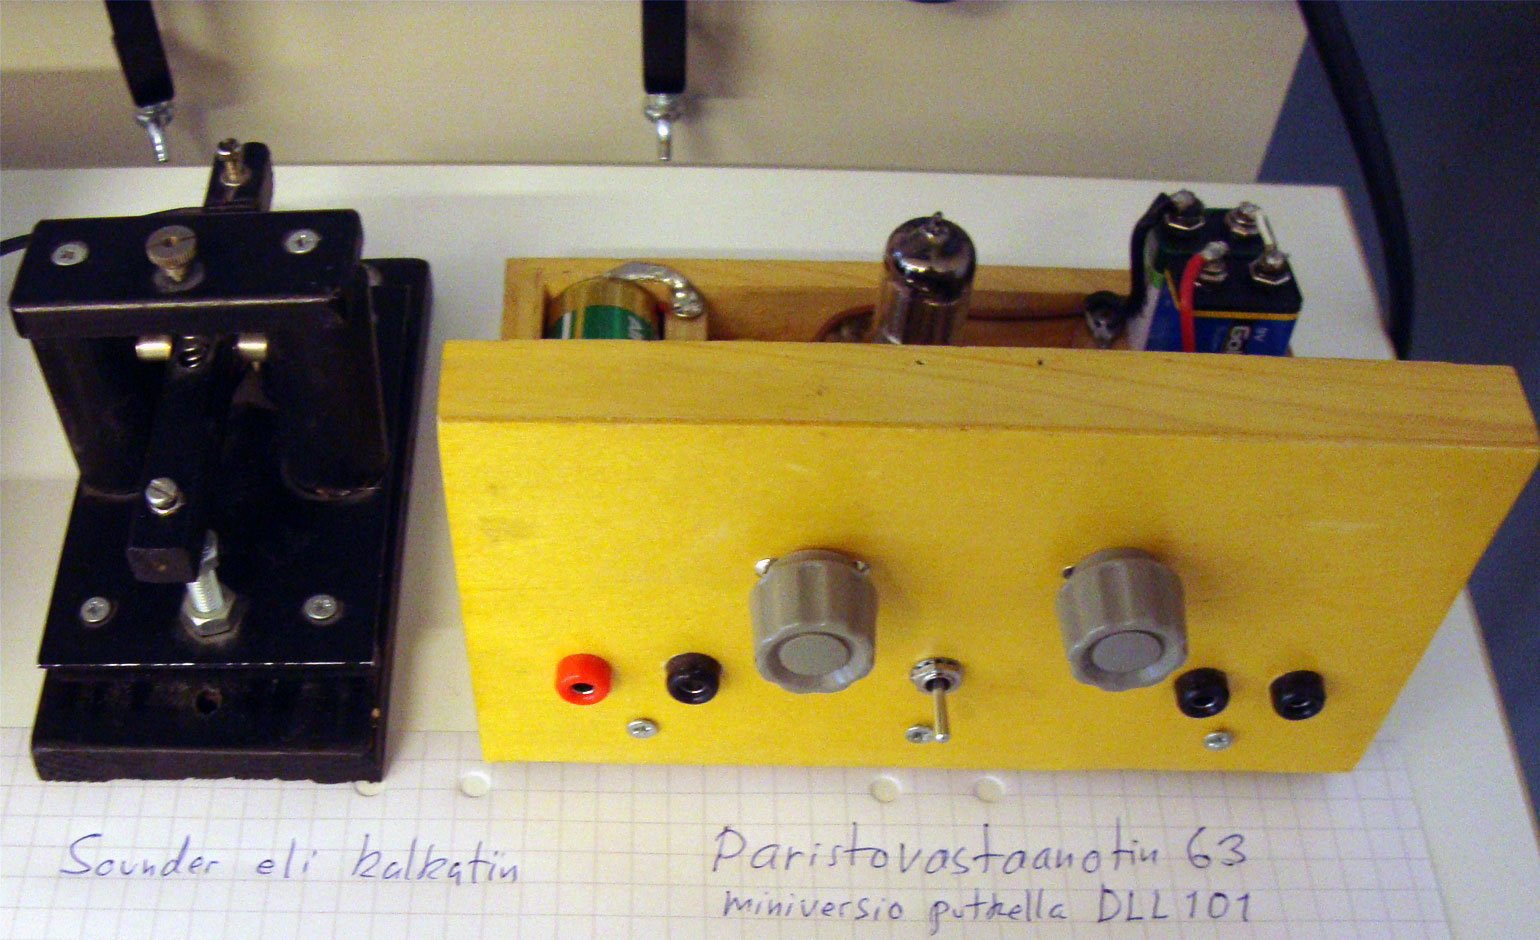 Itse rakennettujen radioiden näyttelyssä paristovastaanotin ja kalkutin.